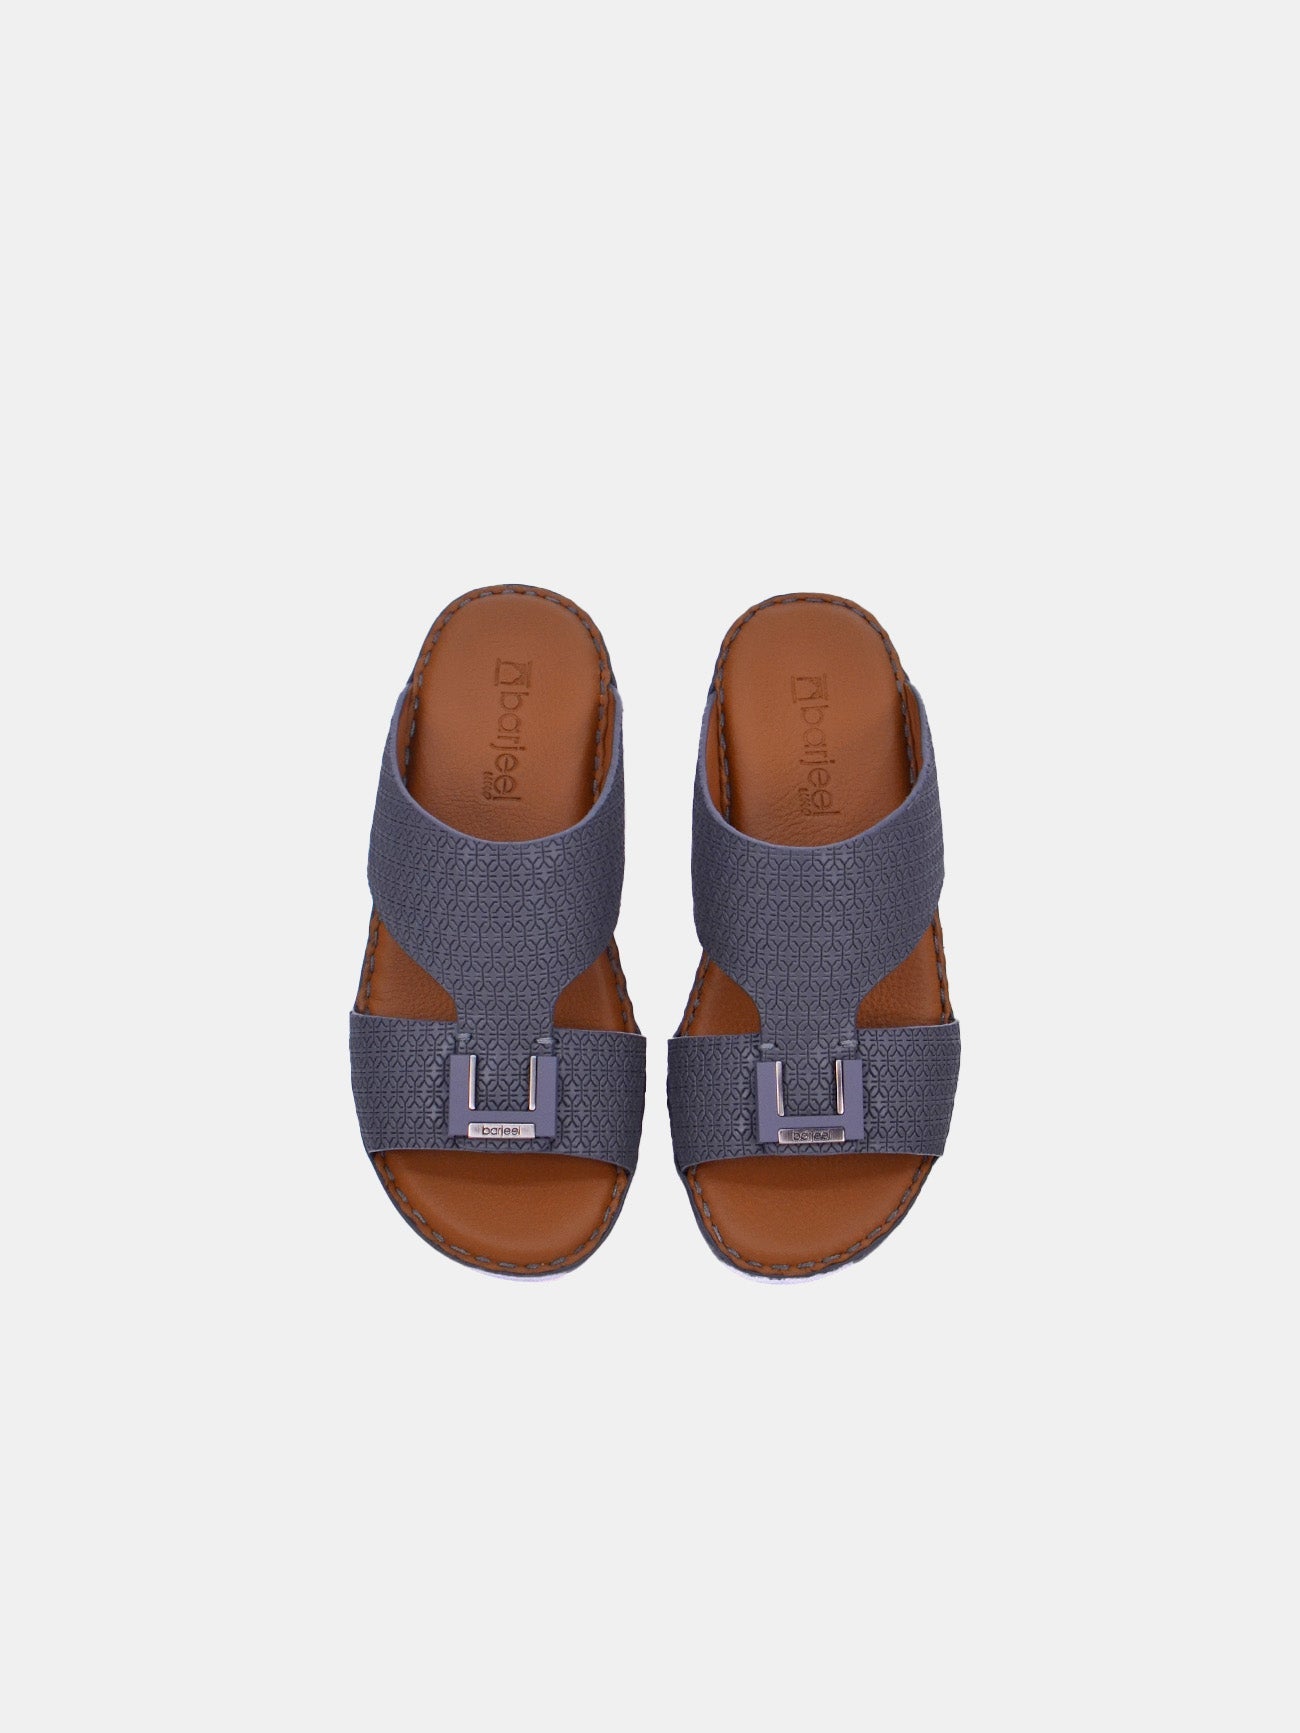 Barjeel Uno BSP1-01 Boys Arabic Sandals #color_Grey